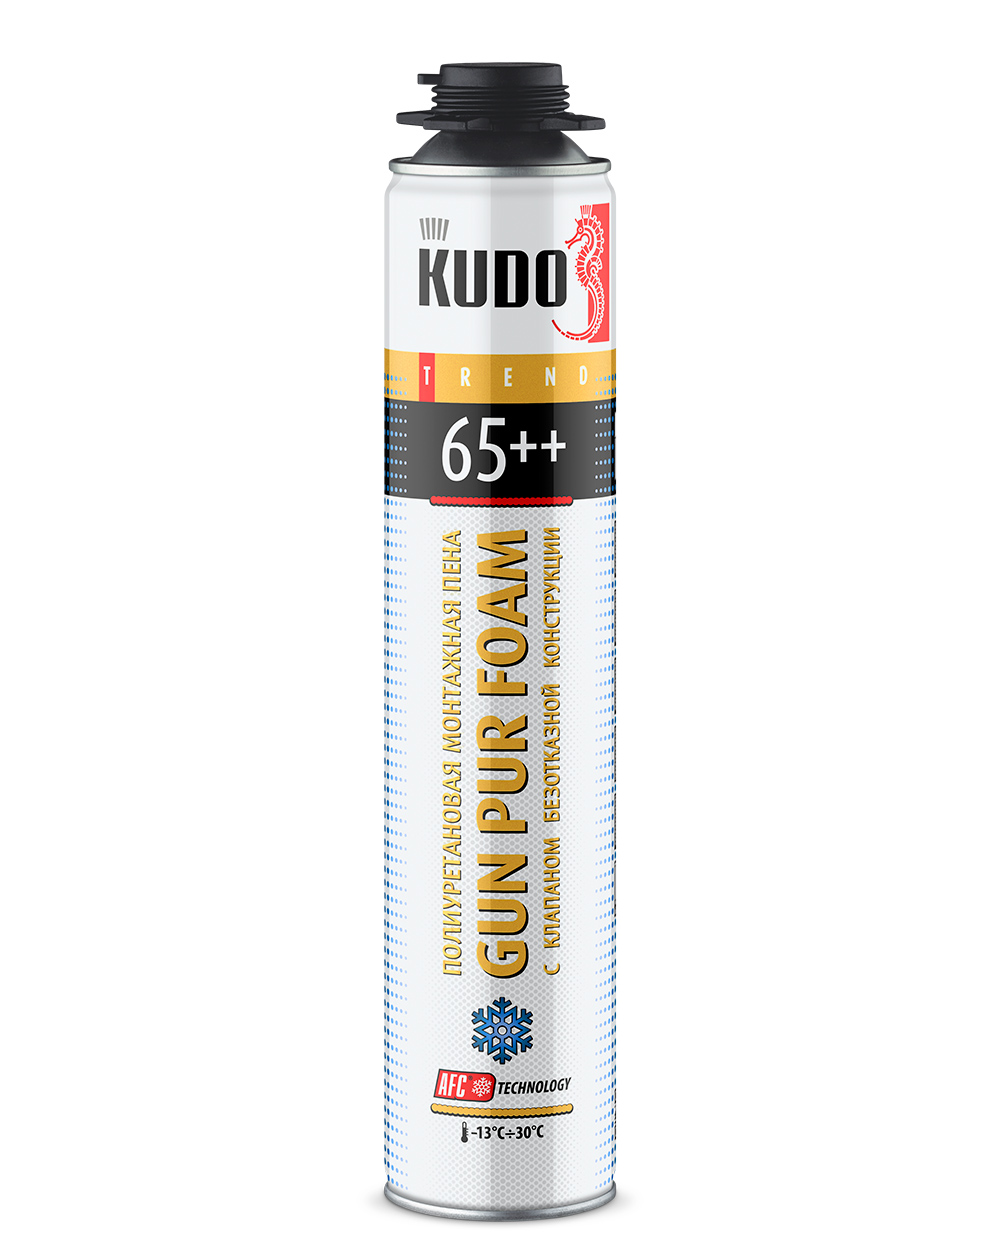 Пена монтажная профессиональная Kudo Trend 65++, зимняя, 1000 мл